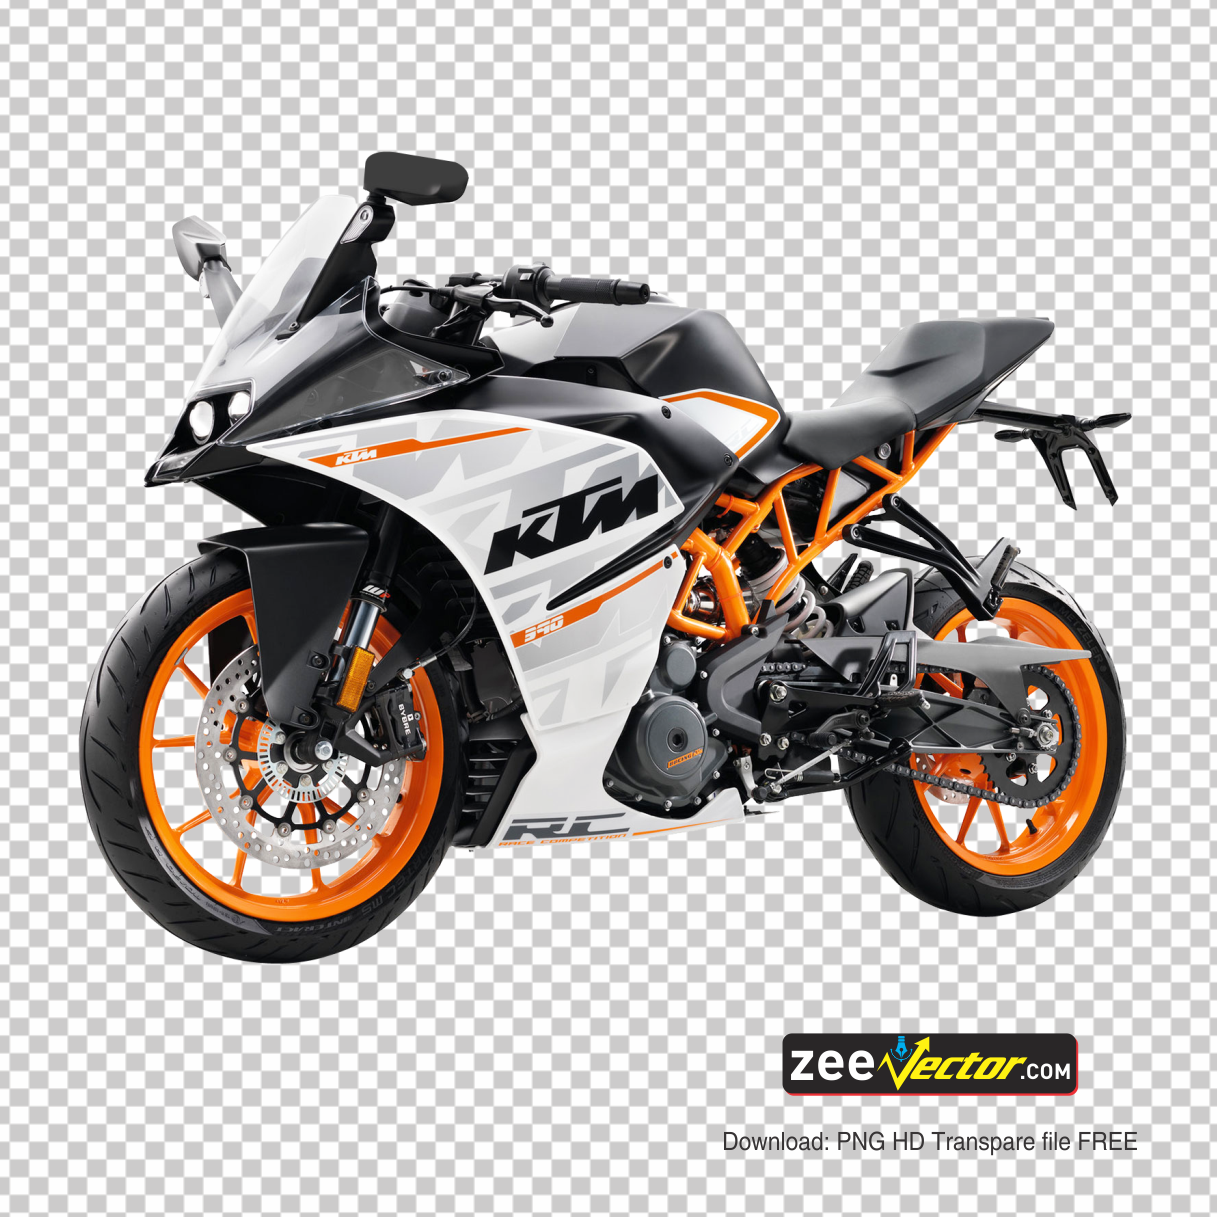 KTM Bike PNG - FREE Vector Design - Cdr, Ai, EPS, PNG, SVG